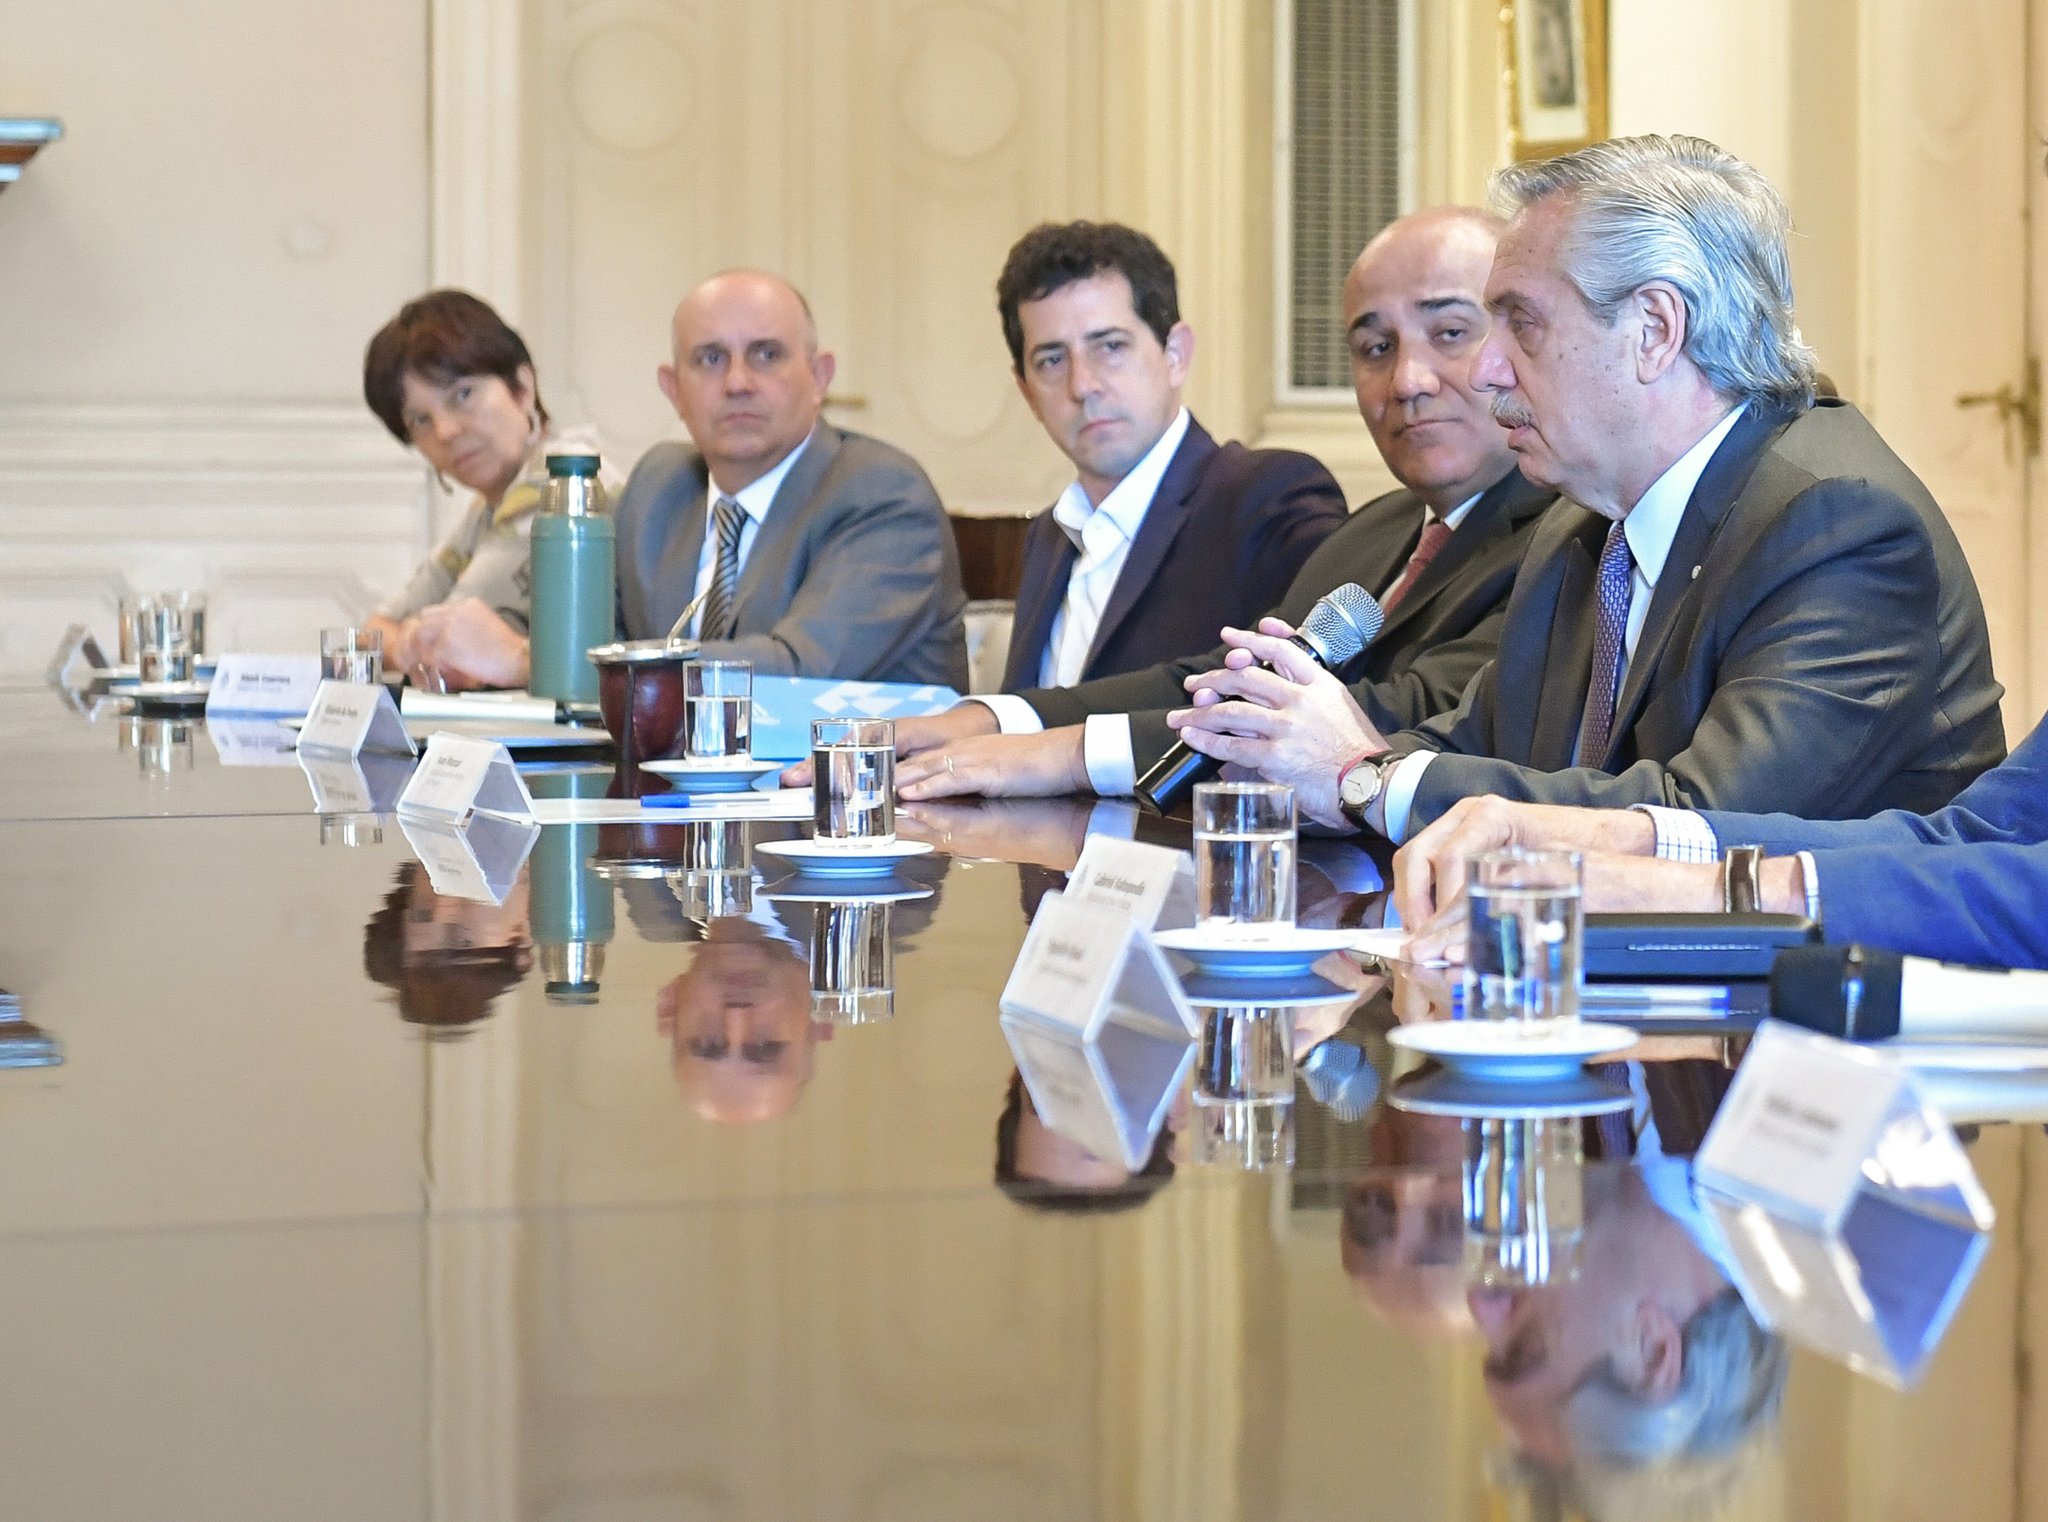 El presidente Alberto Fernández habla durante la reunión de gabinete en la Rosada. Fue invitado a París donde expondrá como titular de la CELAC.